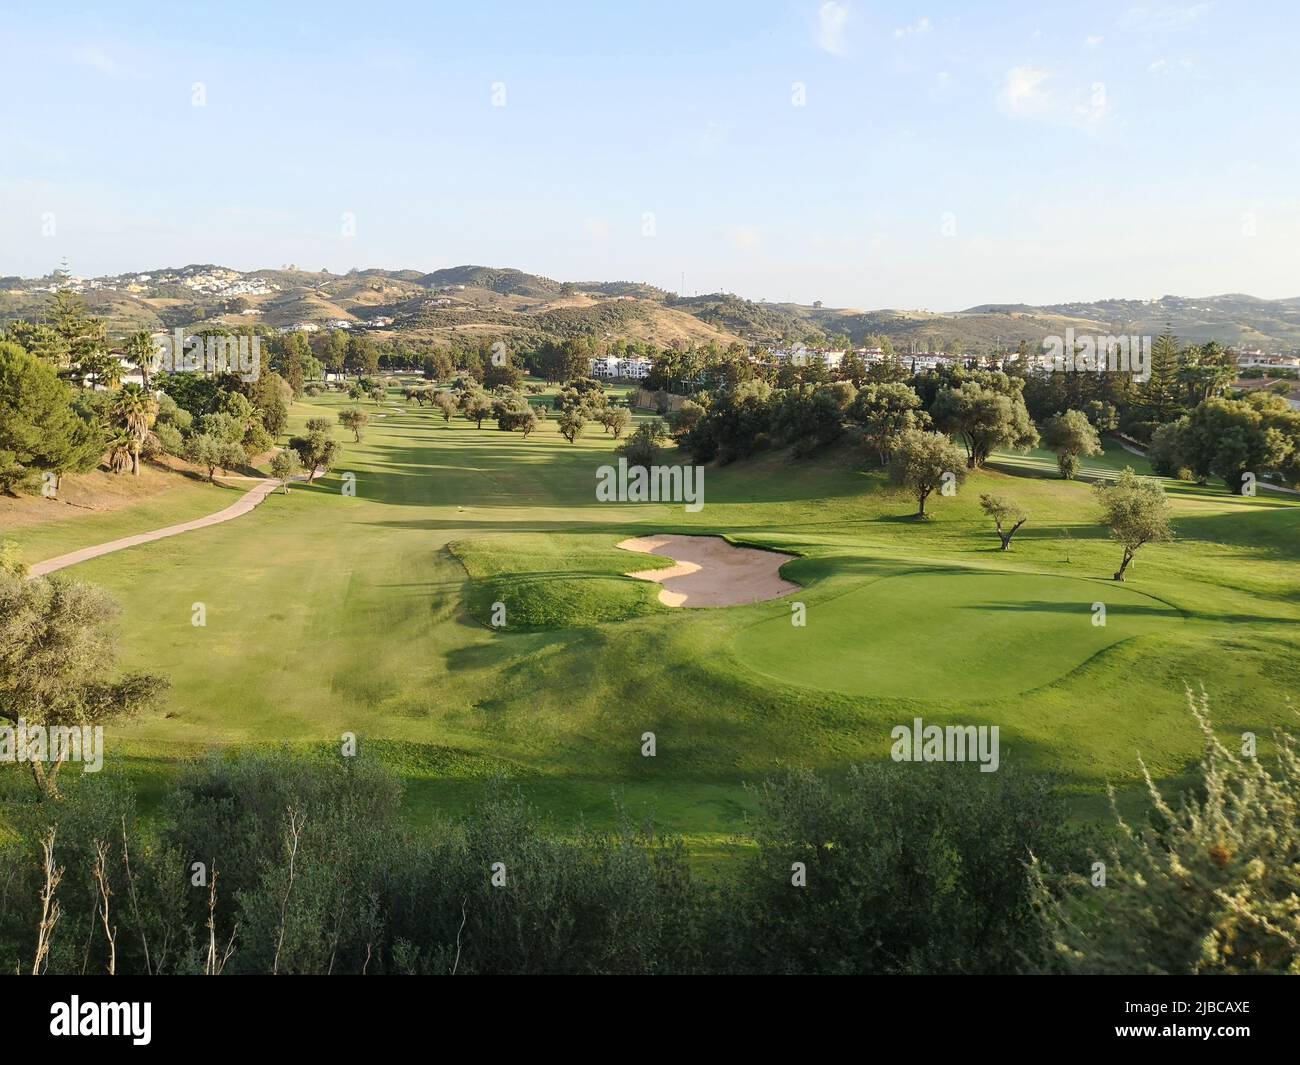 Parcours de golf 18 trous de Mijas, Los Olivos à Mjas Costa, Espagne Banque D'Images